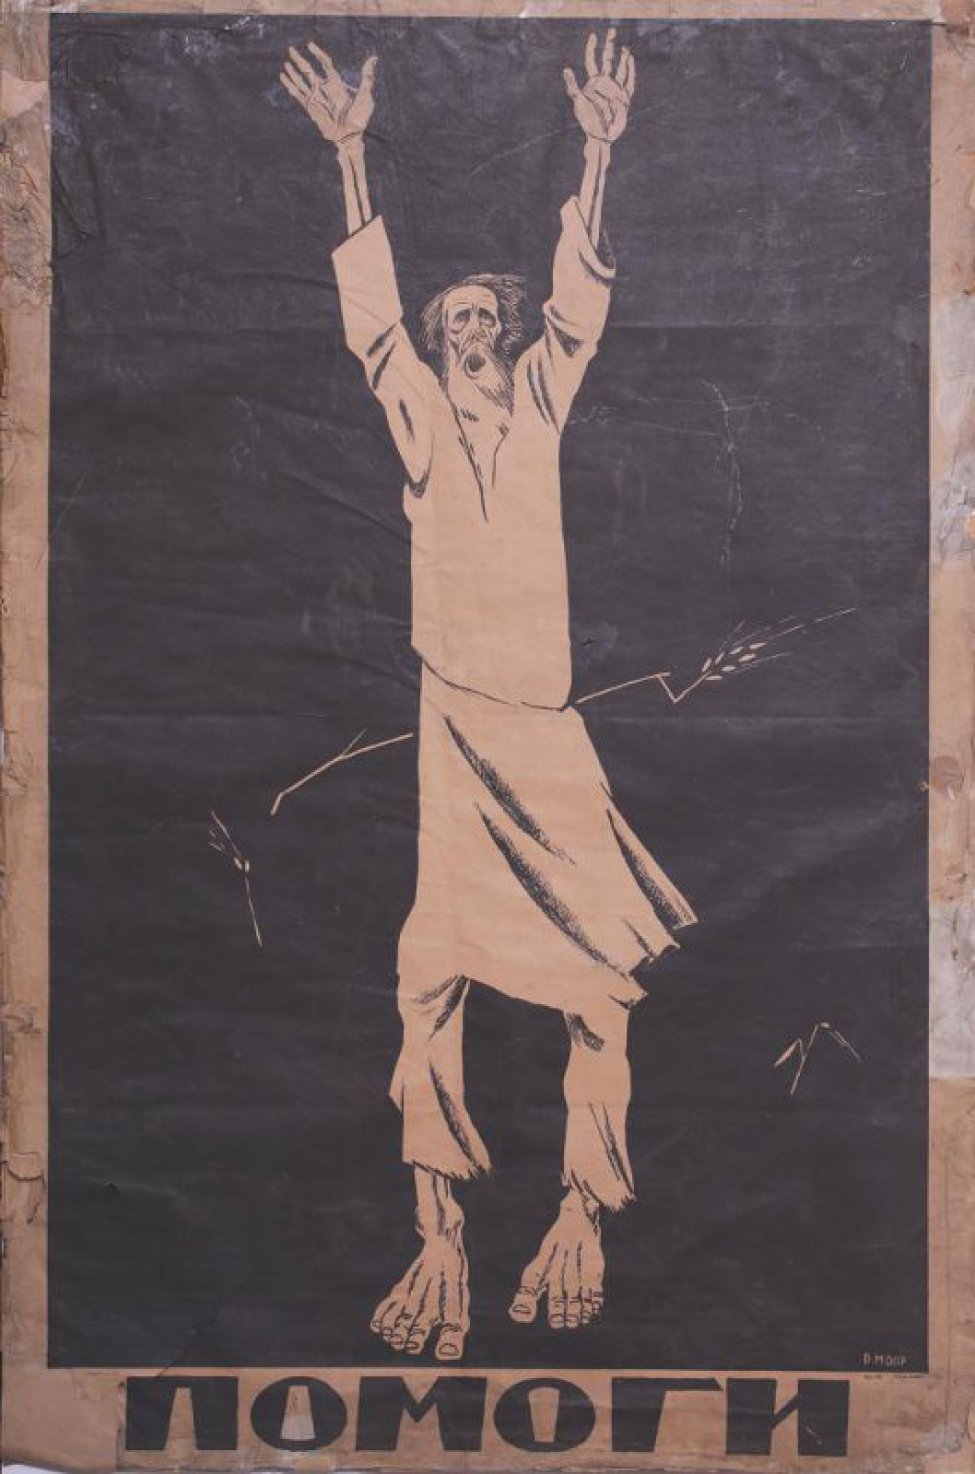 Изображен истощенный  крестьянин,обе руки подняты вверх. Внизу видны голые костлявые ноги.